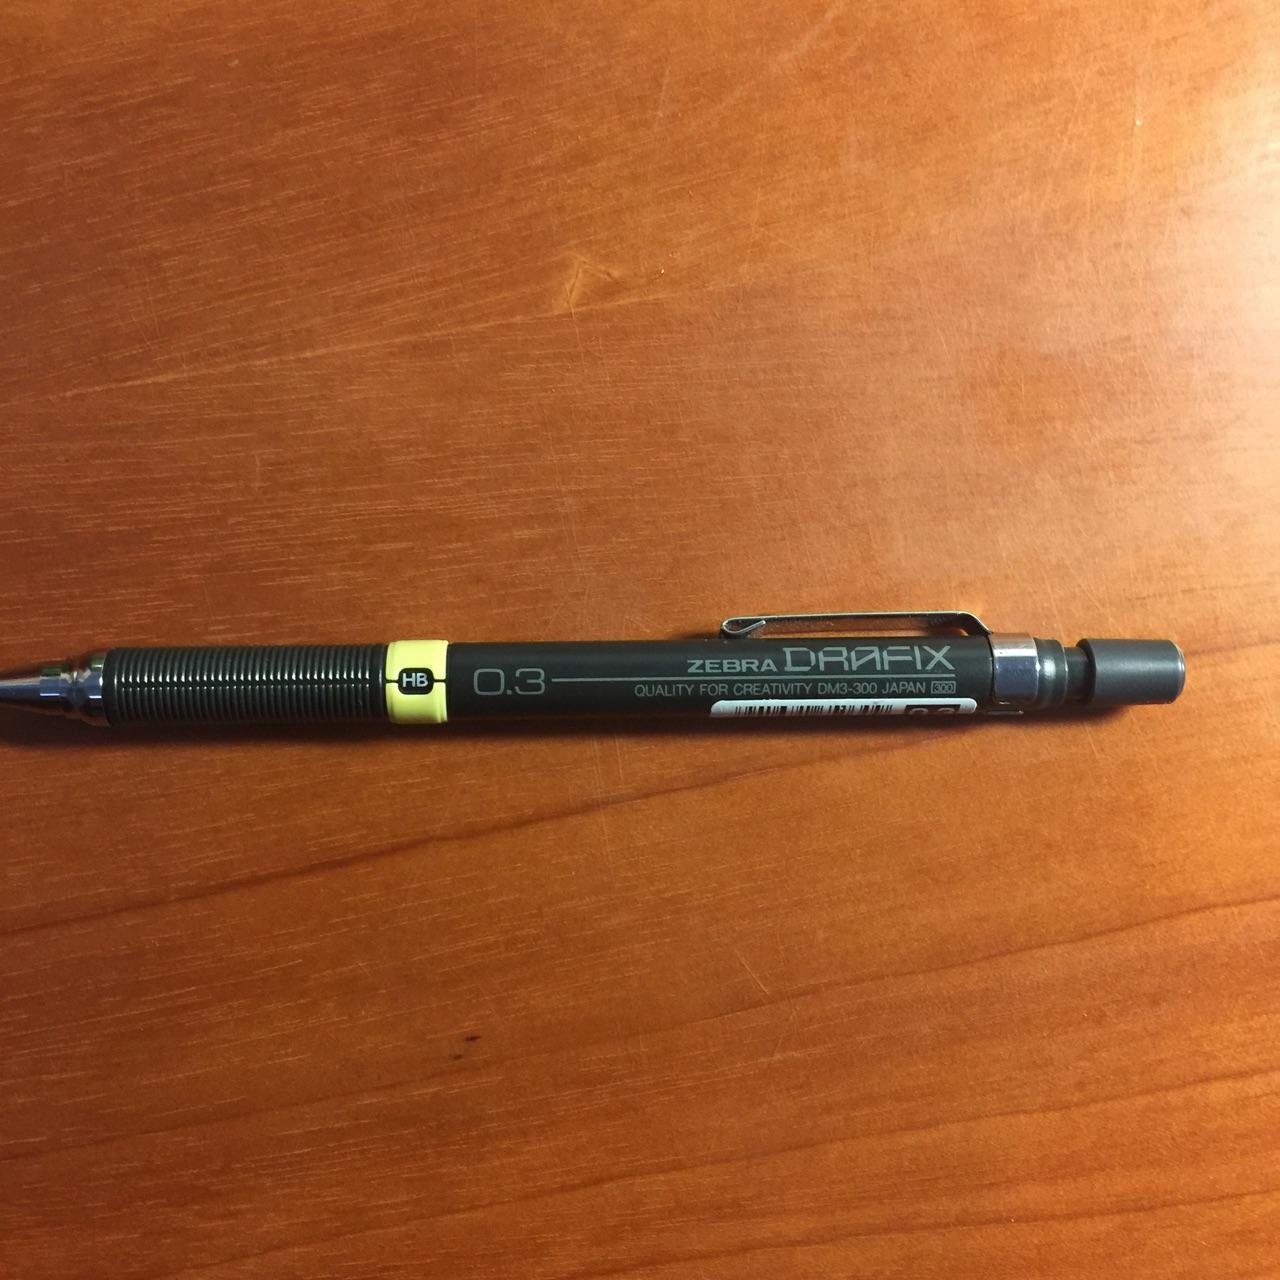 斑马0.3自动铅笔(扎人特别疼有没有!)